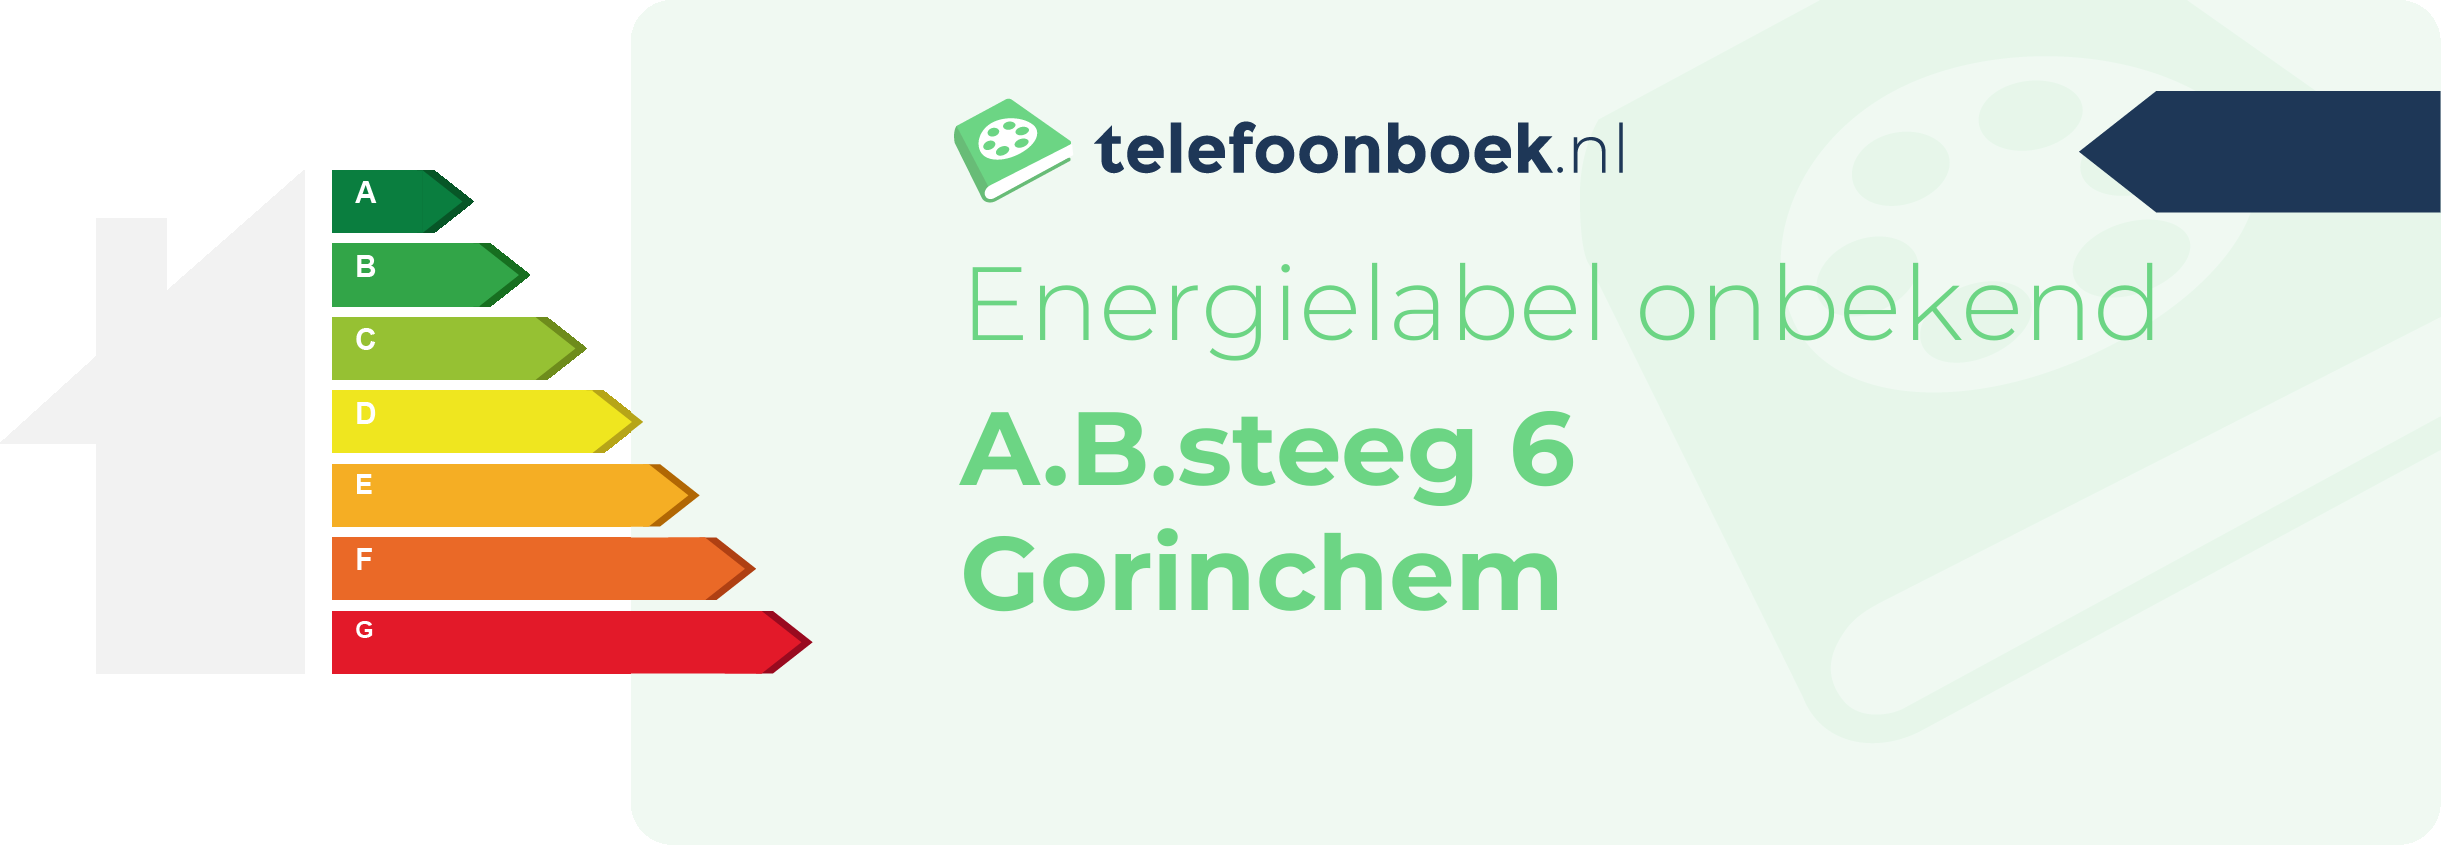 Energielabel A.B.steeg 6 Gorinchem